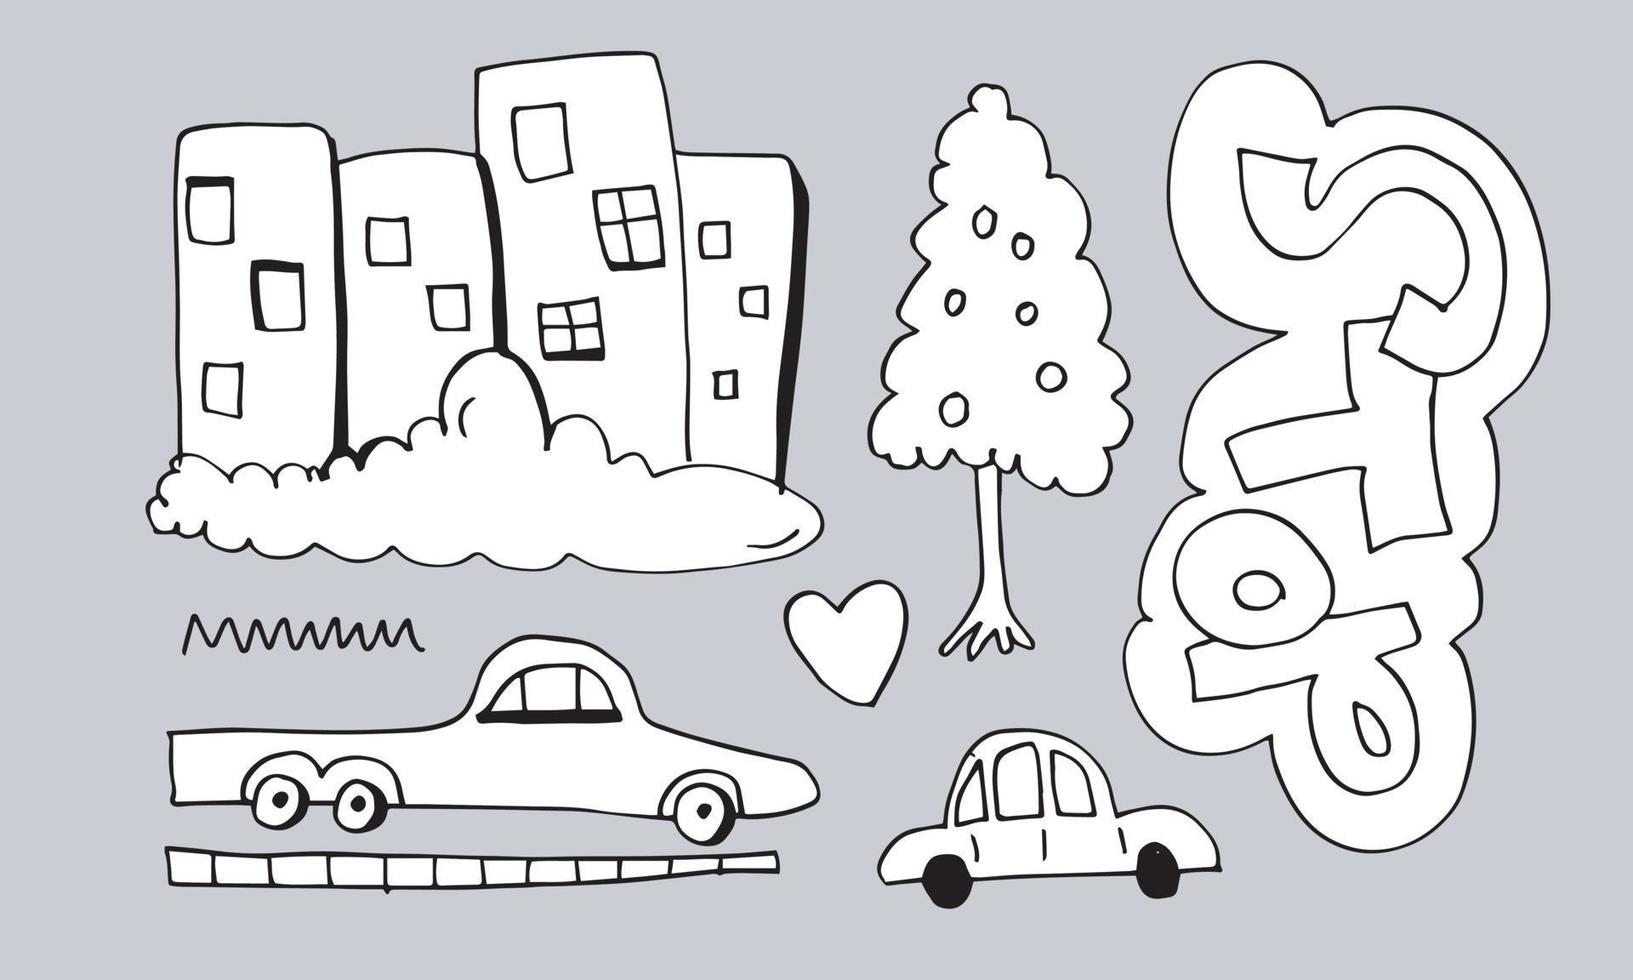 disegnare a mano di automobili, case, alberi ed edifici su sfondo bianco. vettore